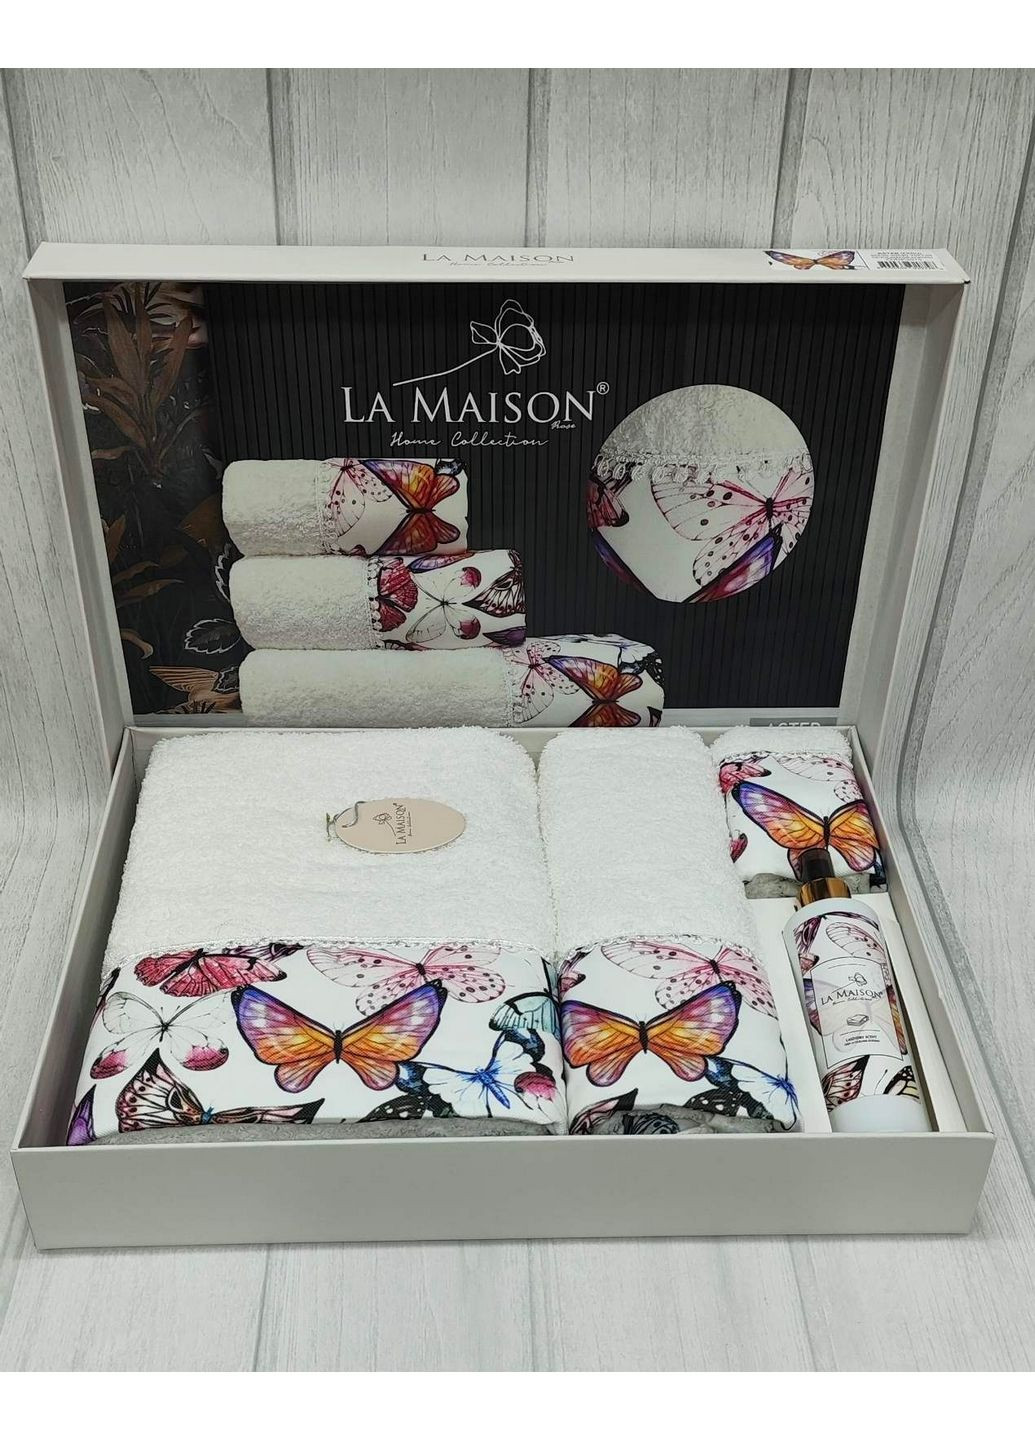 La Maison подарочный комплект полотенец с духами комбинированный производство - Турция